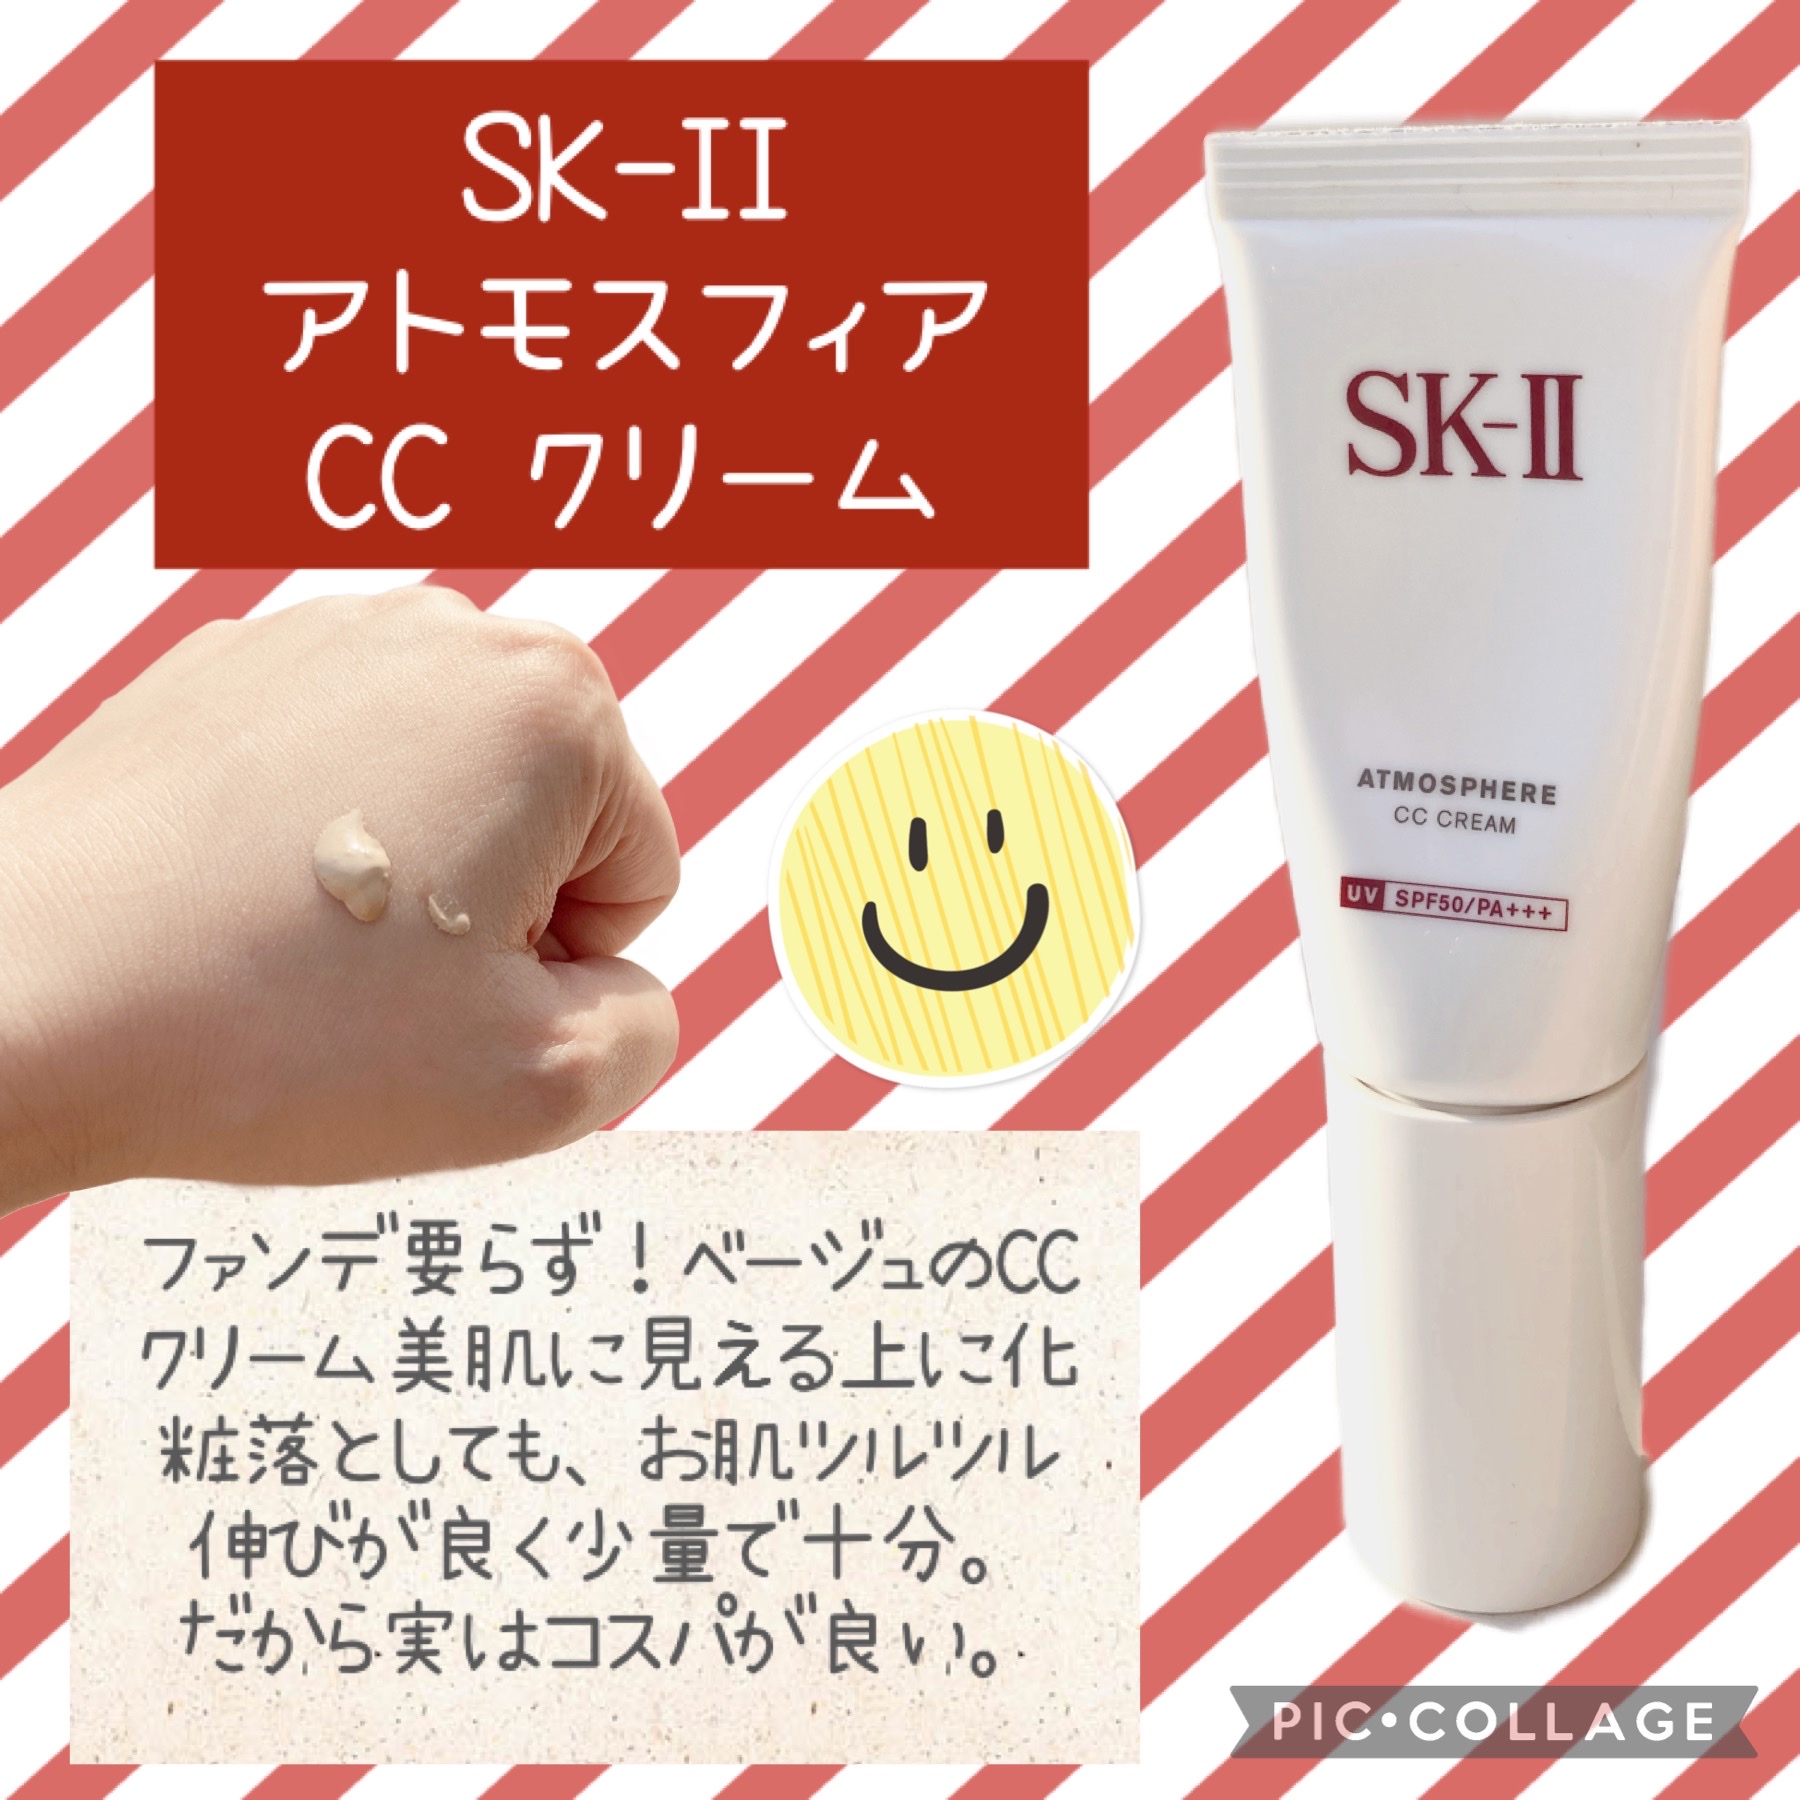 SK-II / アトモスフィア CC クリームの公式商品情報｜美容・化粧品情報 